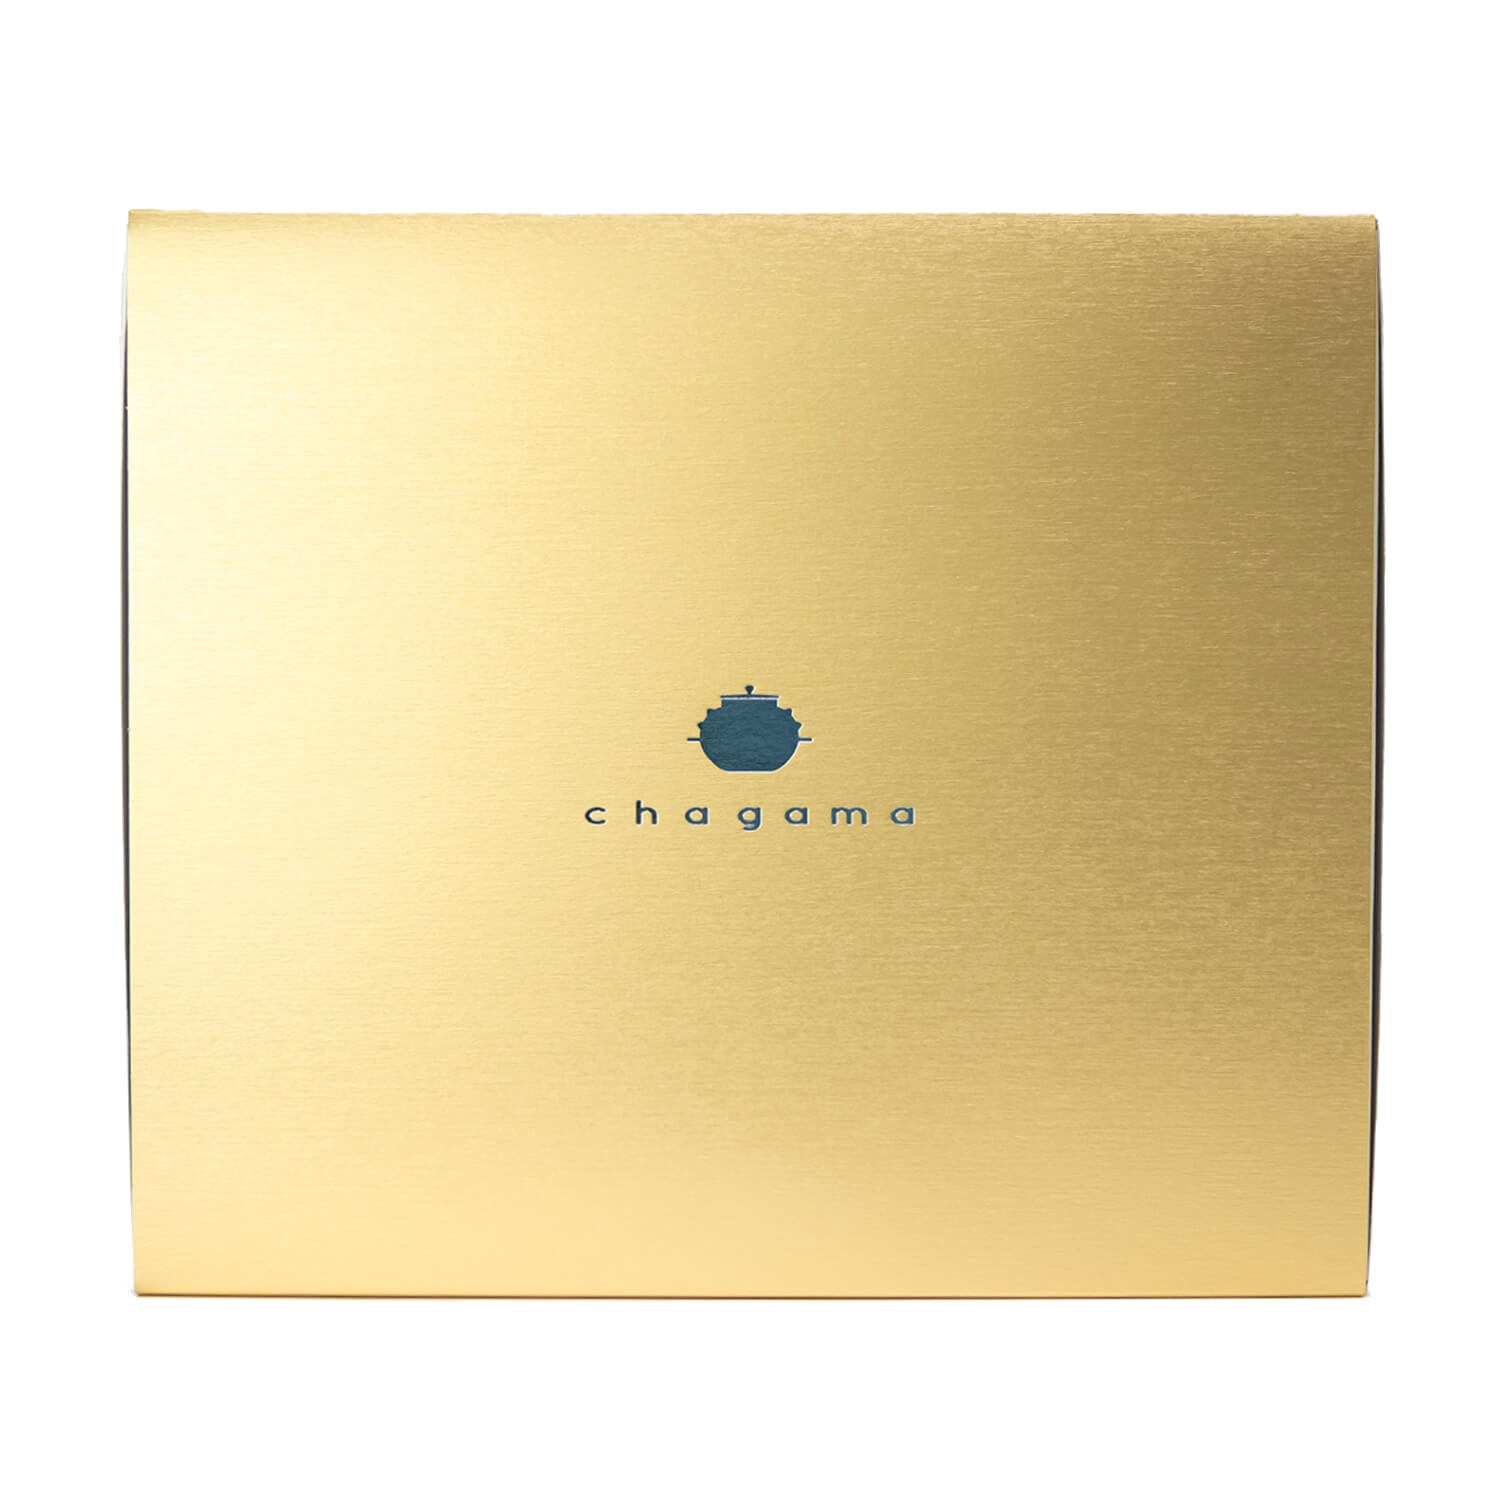 chagama100g詰めギフト用の箱(2or3袋用) 金色